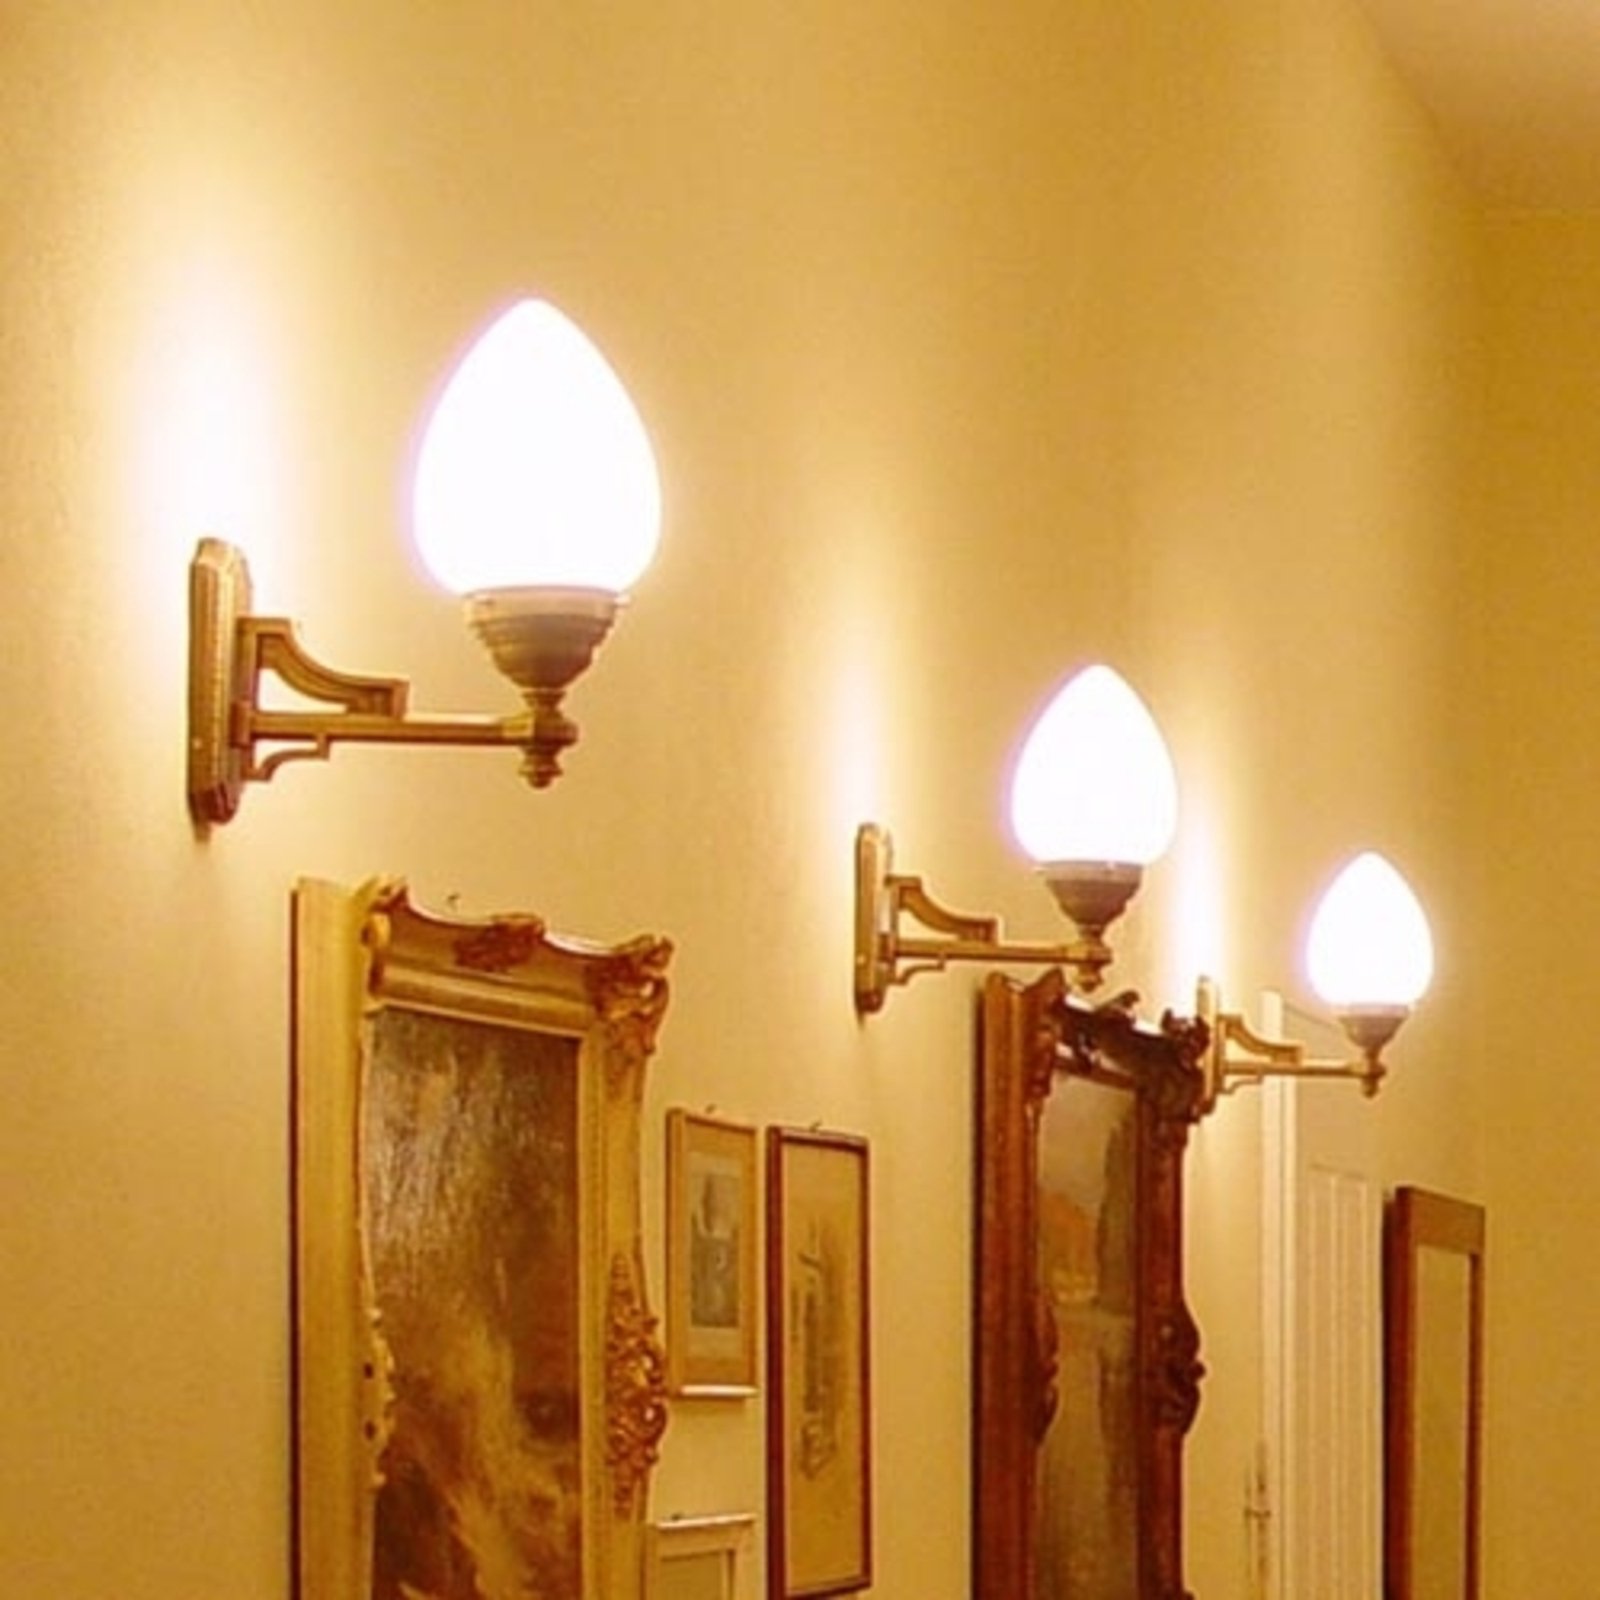 Venice - wall light made of brass